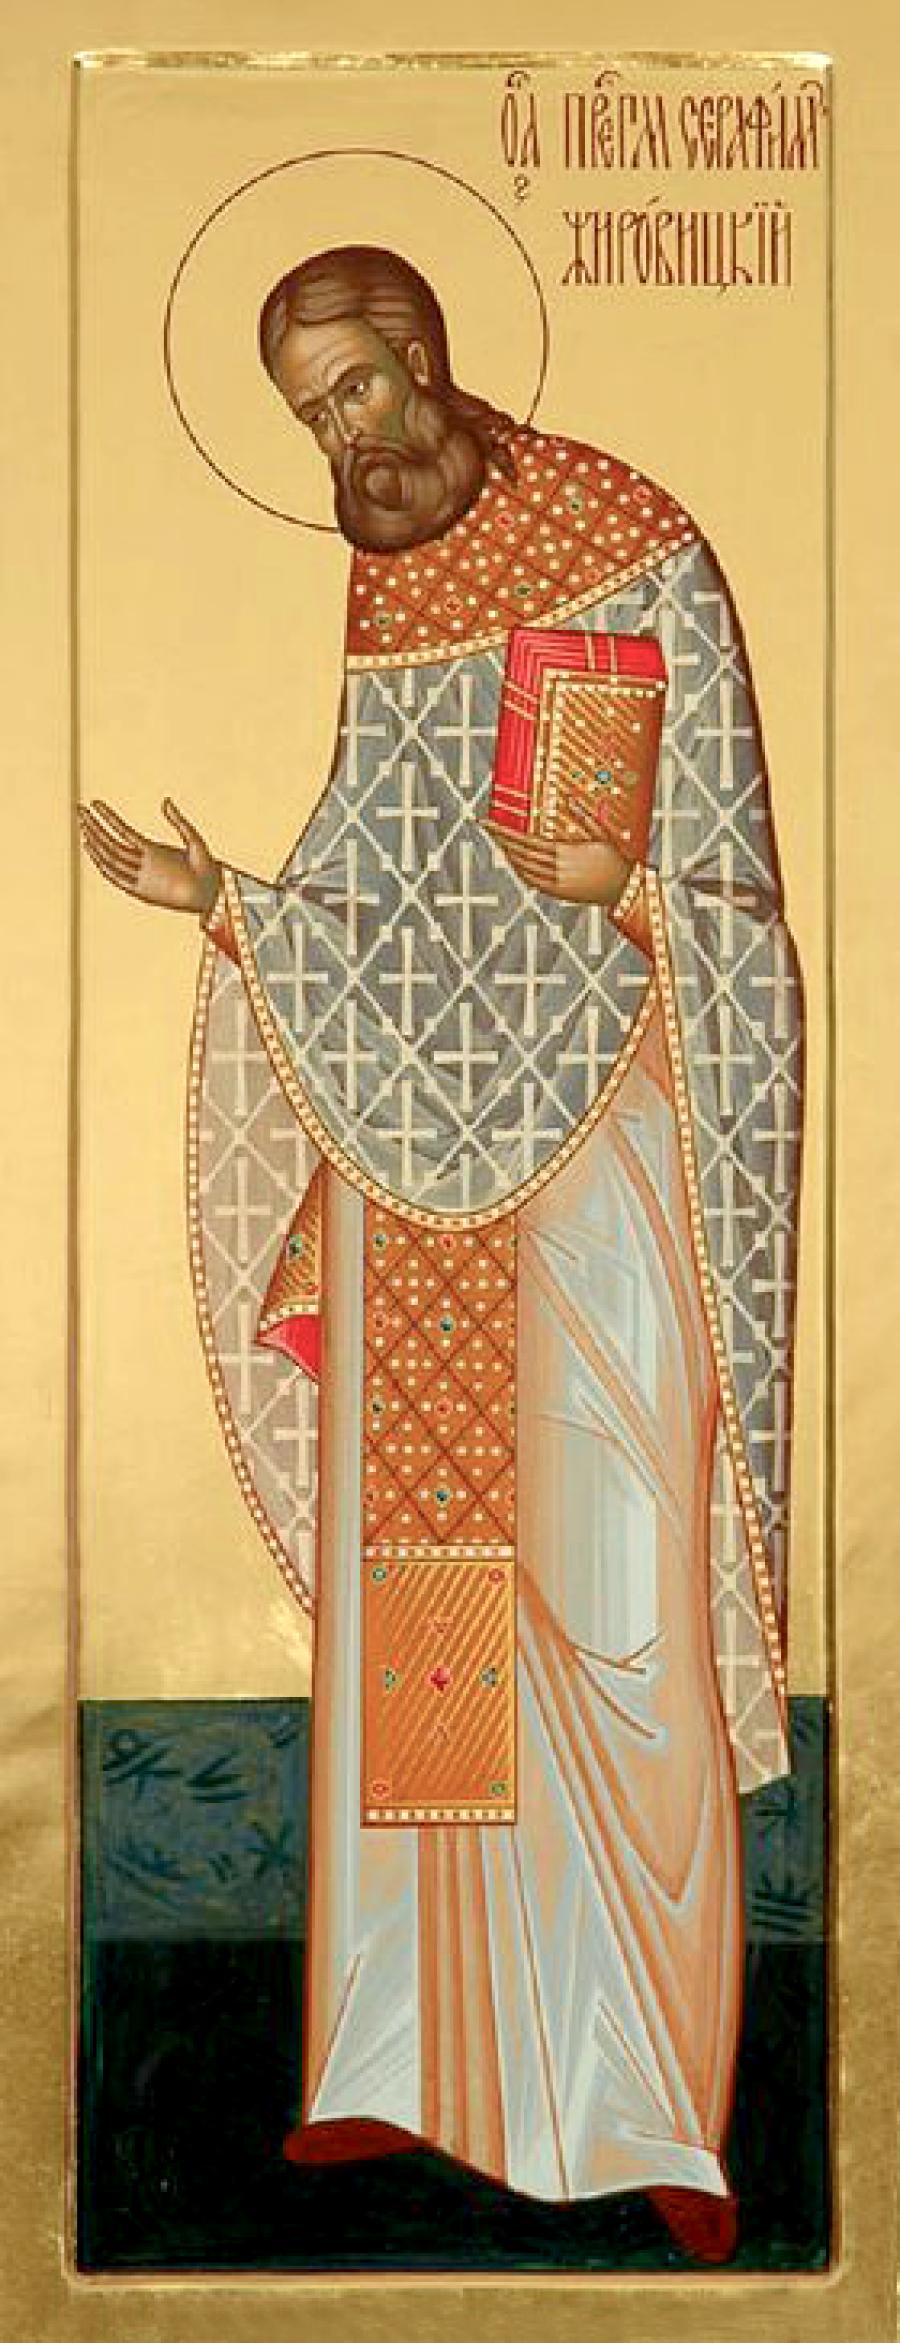 Преподобномученик Серафим (Шахмуть), Жировицкий, архимандрит